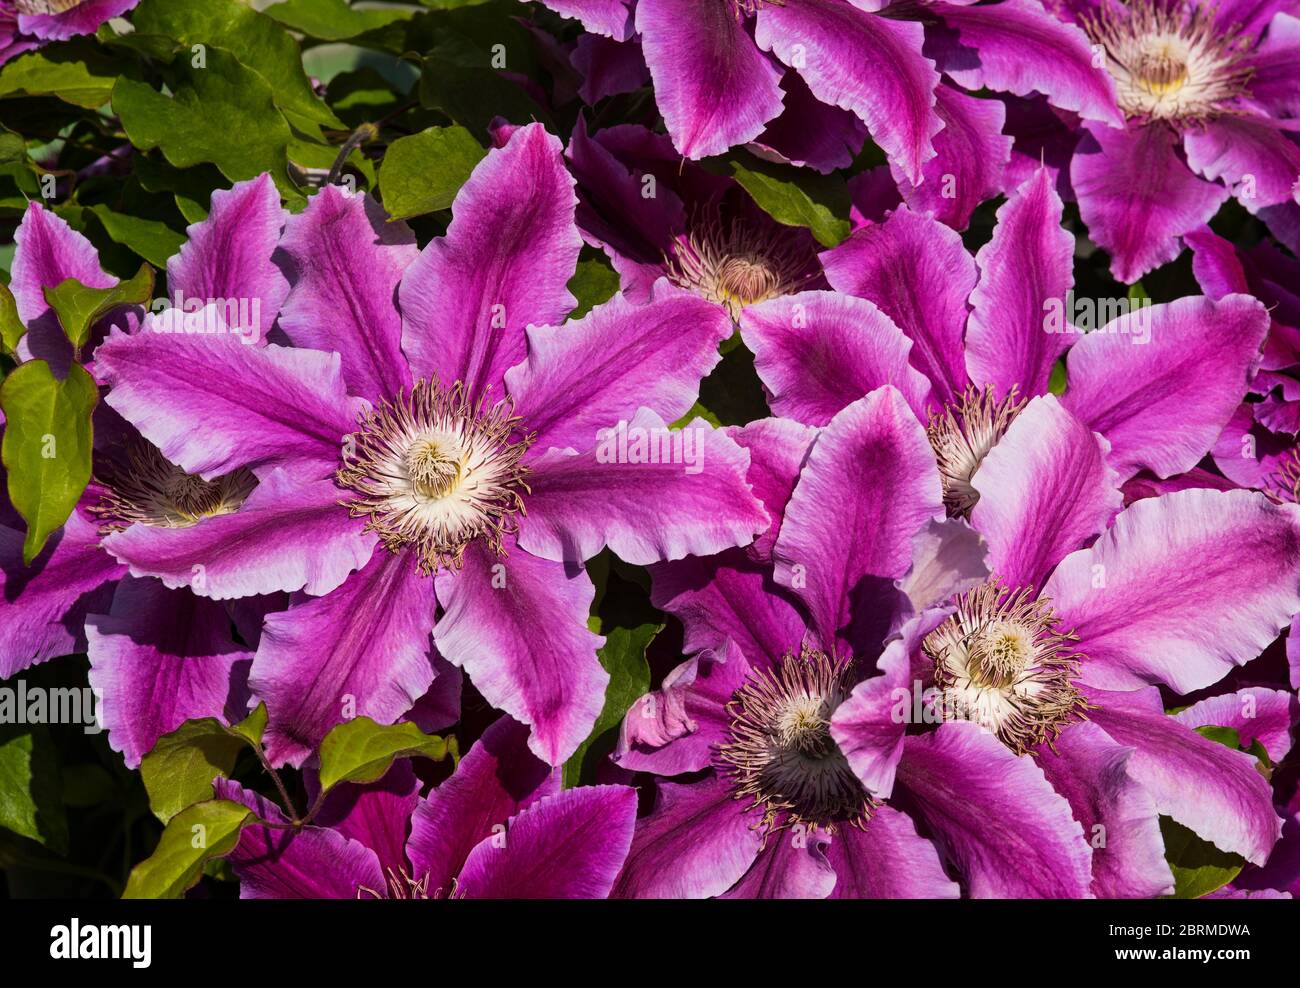 Clematis peut-être 'r Ruppel'. Rose foncé central, presque violet, rayures qui se mélangent aux pétales rose pâle. Banque D'Images